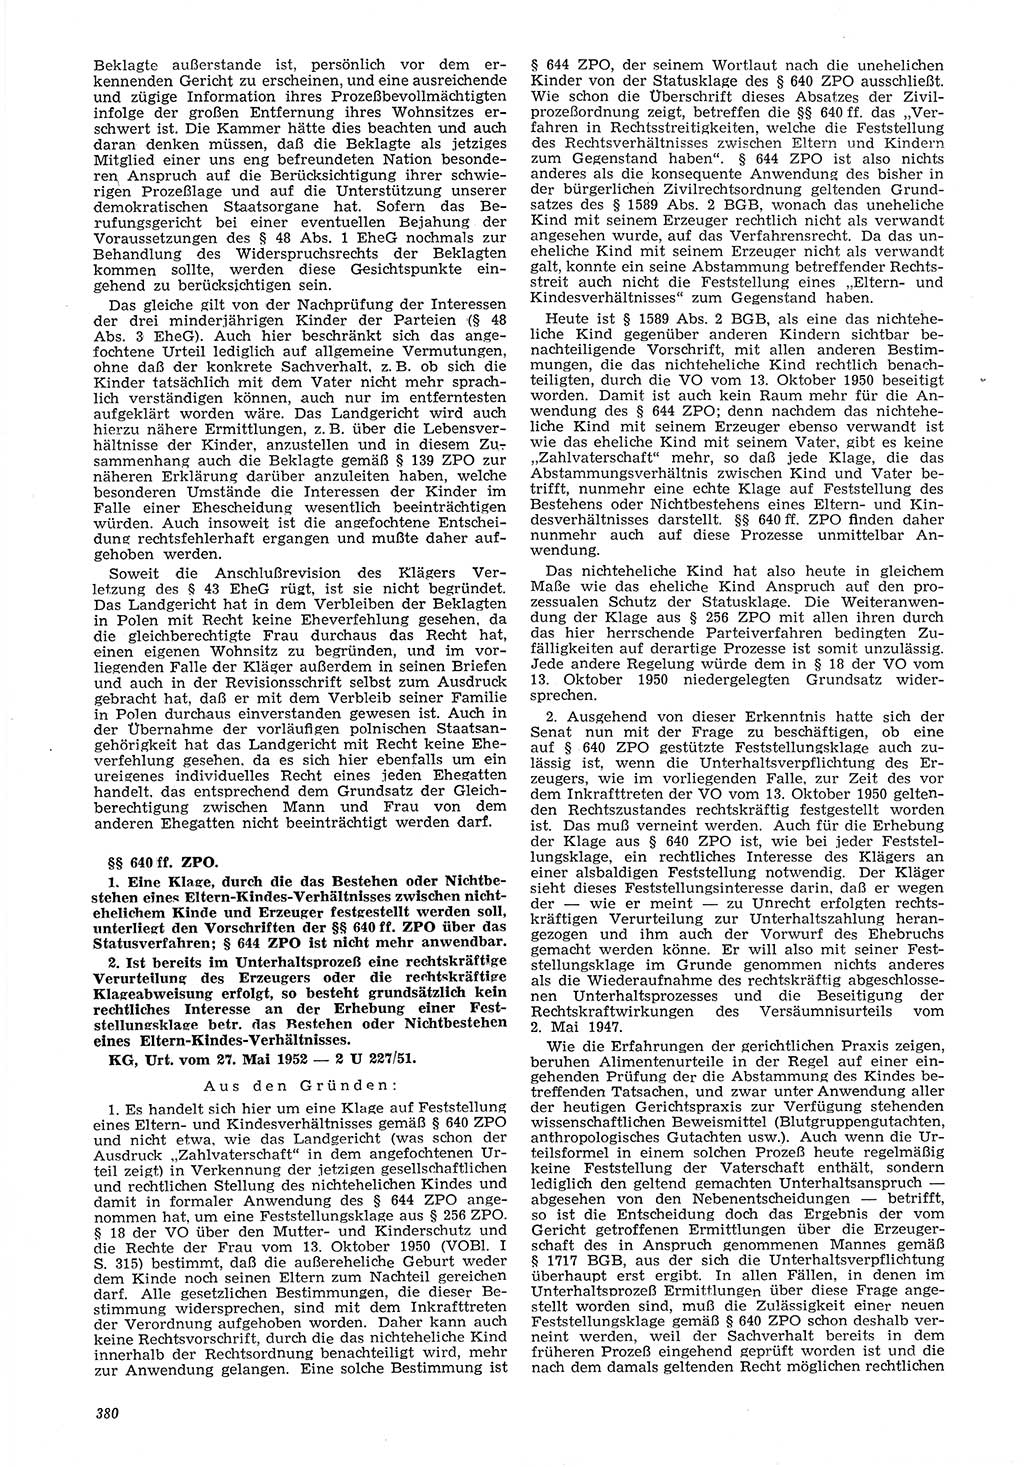 Neue Justiz (NJ), Zeitschrift für Recht und Rechtswissenschaft [Deutsche Demokratische Republik (DDR)], 6. Jahrgang 1952, Seite 380 (NJ DDR 1952, S. 380)